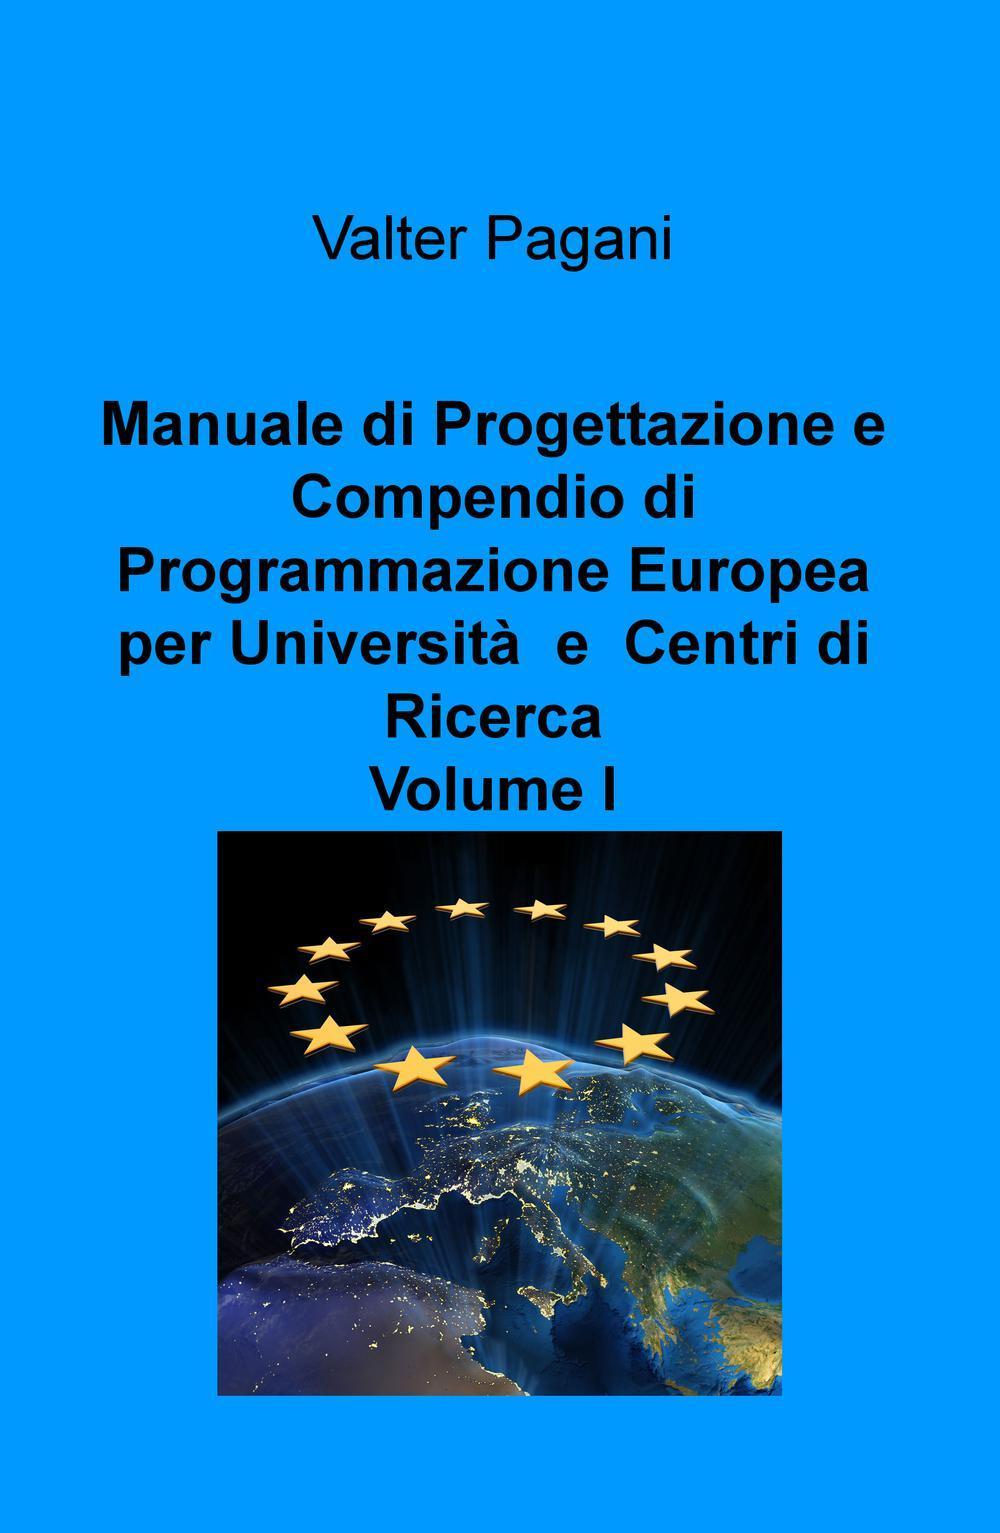 Manuale di progettazione e compendio di programmazione europea per università e centri di ricerca. Vol. 1: Come atenei, dipartimenti universitari e team di ricerca possono progettare interventi con i fondi europei